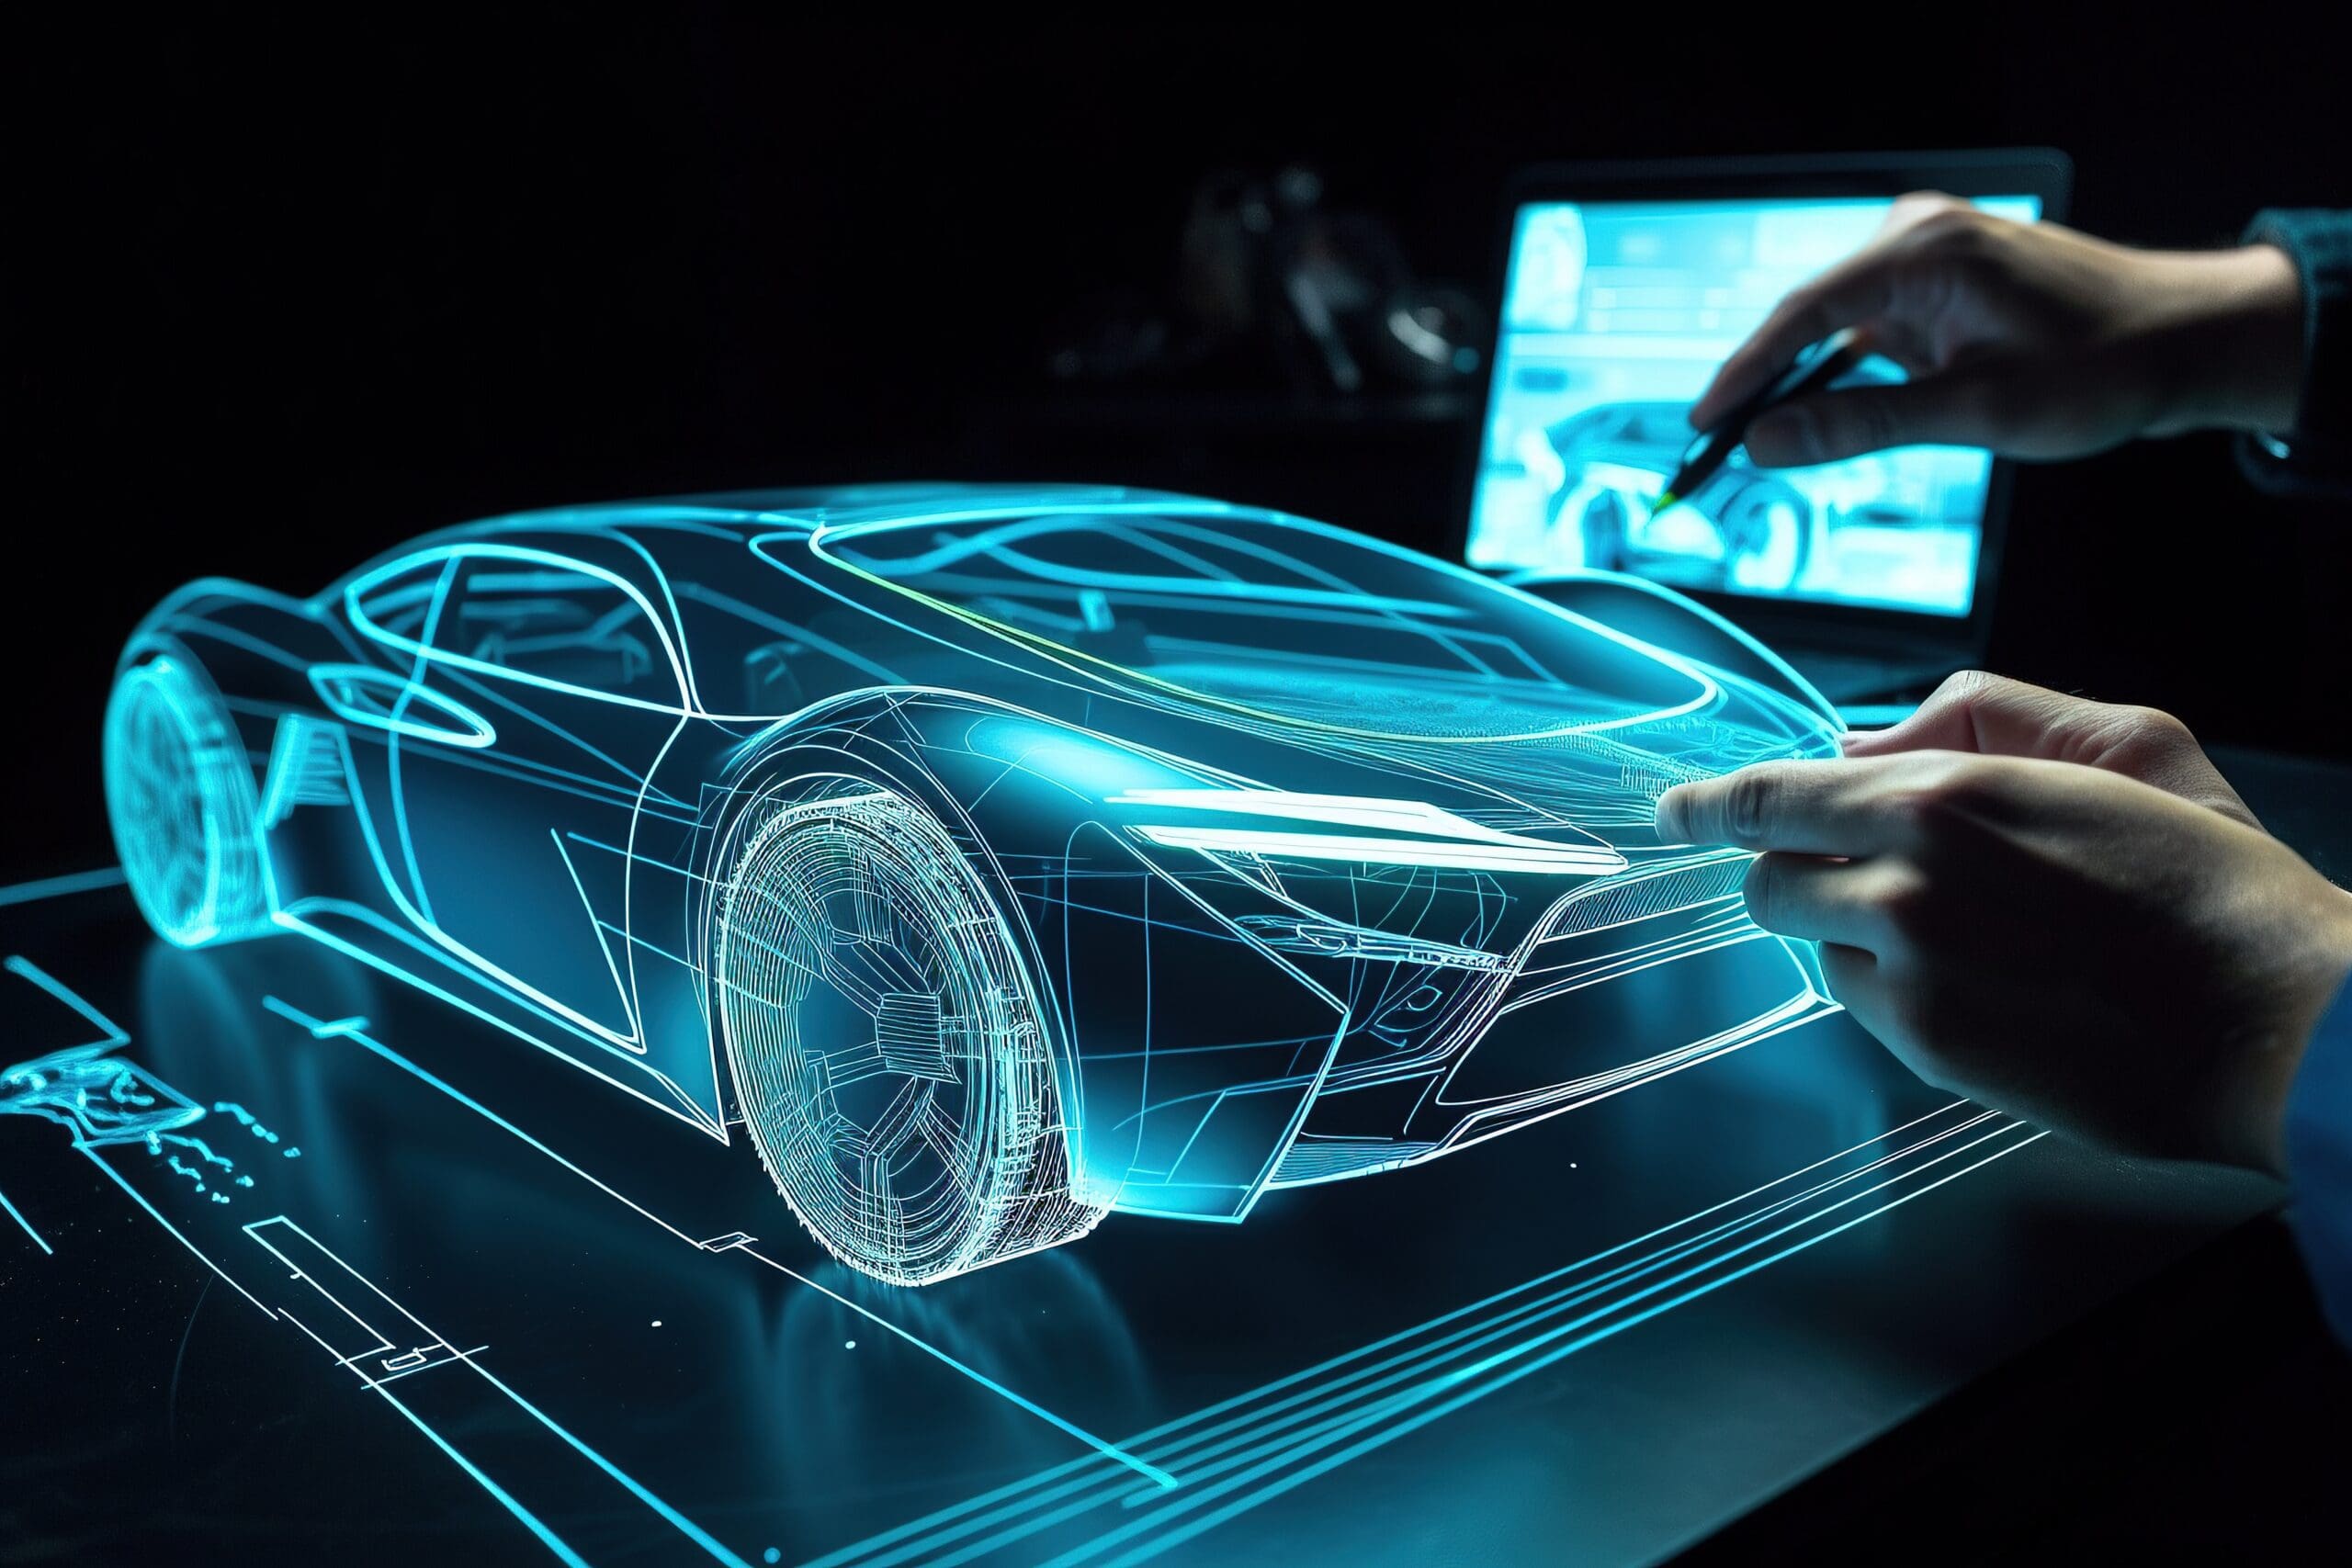 Holographische Darstellung eines Sportwagens im Designprozess, veranschaulicht moderne Techniken im Game Development für Fahrzeugmodellierung.